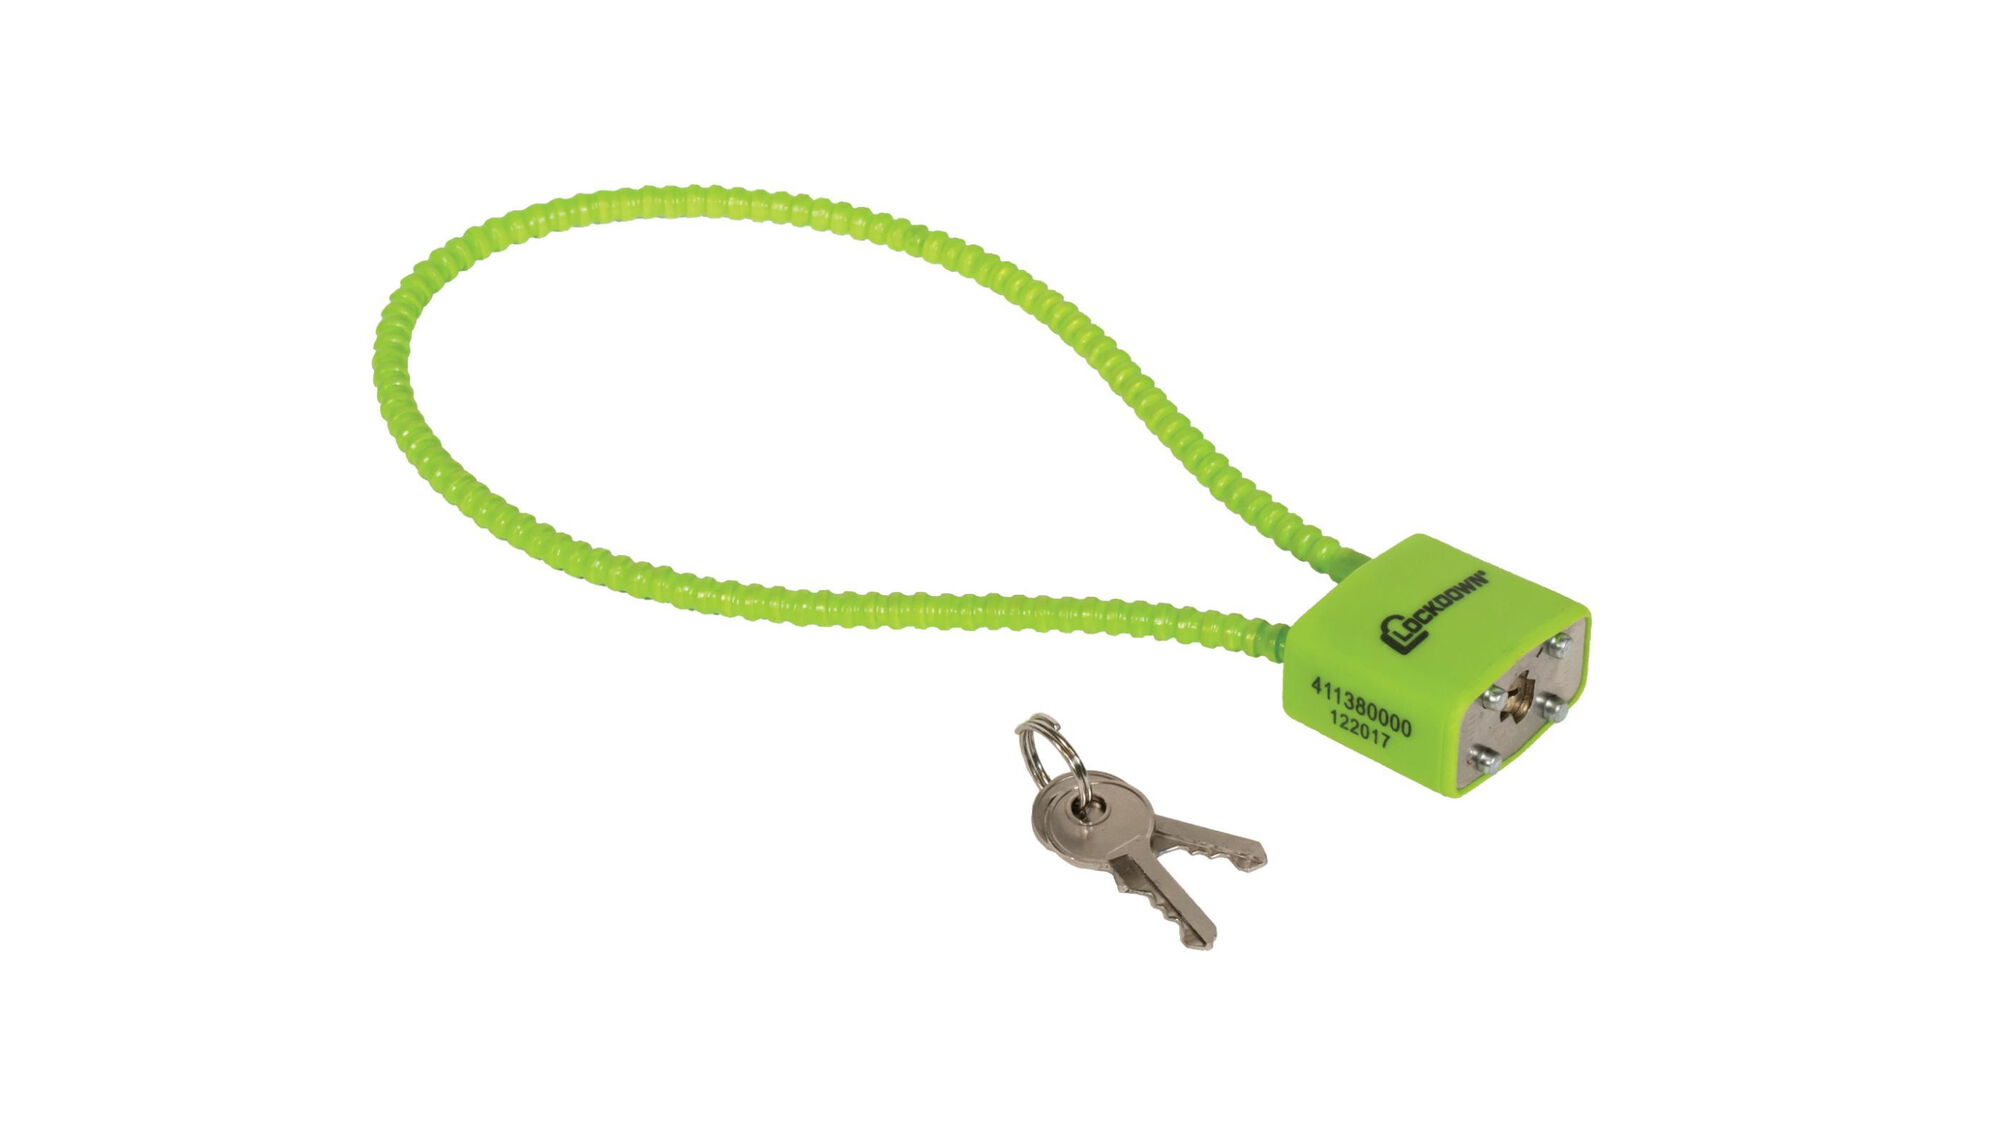  Lockforall Cable Gun Locks with Keys - Keyed Alike 15